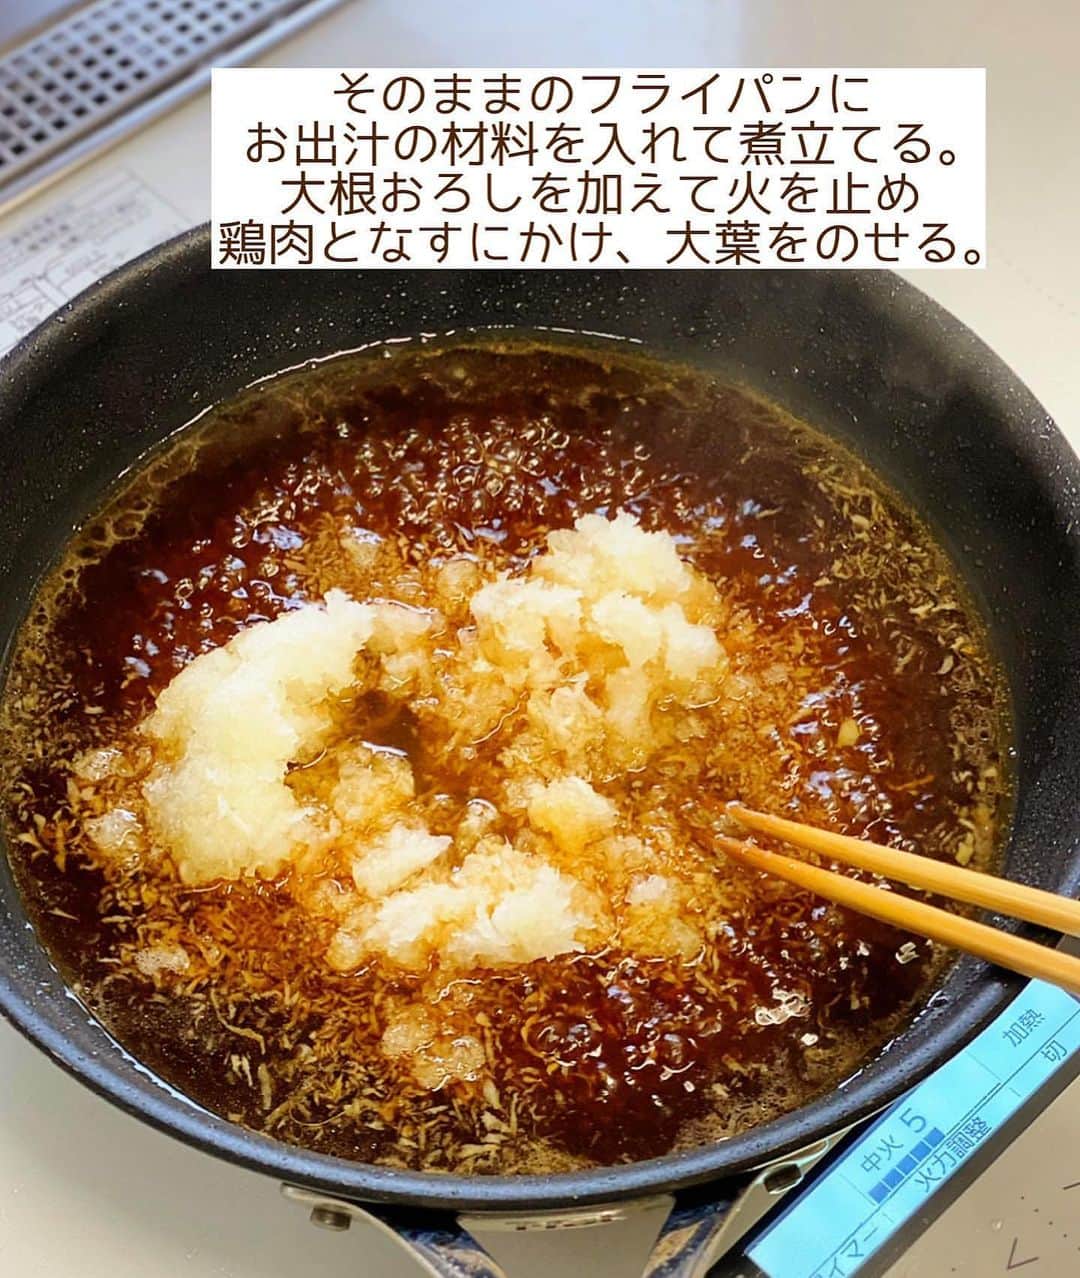 Mizuki【料理ブロガー・簡単レシピ】さんのインスタグラム写真 - (Mizuki【料理ブロガー・簡単レシピ】Instagram)「・カリッじゅわ〜食感💕 ⁡ ［#レシピ ］ ーーーーーーーーーーーーーーーー 揚げない！鶏肉となすの揚げ出し ーーーーーーーーーーーーーーーー ⁡ ⁡ ⁡ おはようございます☺️ ⁡ 💬インスタの新しいアプリ 『#Threads 』はじめました🌸 あちらではレシピ未満の料理とか 変な暮らしを綴りますので 仲良くしてくださいね✨ ラフな感じで繋がりましょう🥰 ⁡(ストーリー、ハイライトから💨) ⁡ ⁡  さて、レシピです📝 今日ご紹介させていただくのは \ 揚げない！鶏肉となすの揚げ出し / (再掲載) ⁡ 以前ご紹介した #揚げ出し鶏m に 野菜を加えてアレンジしました💕 ⁡ 作り方は超簡単！！ 鶏肉となすを一緒に焼いて おろし入りのお出汁をかけるだけ✨ カリッじゅわ〜な食感と ふわっと香るごま油が たまらない味わいですよ〜😋 ⁡ フライパンひとつでできるので よかったらお試し下さいね♩ ⁡ ⁡ ⁡ ⋱⋰ ⋱⋰ ⋱⋰ ⋱⋰ ⋱⋰ ⋱⋰ ⋱⋰ ☑︎簡単・時短・節約レシピ更新中 @mizuki_31cafe ⁡ ☑︎謎の暮らし＆変なライブ垢 @mizuki_kurashi ⋱⋰ ⋱⋰ ⋱⋰ ⋱⋰ ⋱⋰ ⋱⋰ ⋱⋰ ⁡ ⁡ ⁡ ＿＿＿＿＿＿＿＿＿＿＿＿＿＿＿＿＿＿＿ 【2人分】 鶏もも肉...1枚(250g) 塩こしょう...少々 片栗粉...大1 なす...2本(200g) 大根...150g ごま油...大2 ●水...200ml ●醤油・みりん...各大2 ●和風顆粒だし...小1/3 大葉(千切り)...適量 ⁡ 1.大根はすり下ろして軽く水気を切る。鶏肉は3cm大に切り、塩こしょうを振って片栗粉をまぶす。なすは長さを半分にし、縦6等分に切り、水に5分晒して水気を拭く。 2.フライパンにごま油を中火で熱し、鶏肉となすを両面焼き、火が通ったら器に盛る。 3.そのままのフライパンに●を入れて煮立てる。大根おろしを加えて火を止め、2にかけ、大葉をのせる。 ￣￣￣￣￣￣￣￣￣￣￣￣￣￣￣￣￣￣￣ ⁡ ⁡ 《ポイント》 ♦︎なすはしっかり水気を切り(できれば拭いて)、皮目から焼くと色鮮やかに仕上がります♩ ♦︎直径26cm以上のフライパンを使用するのがおすすめです♩ ♦︎お出汁はたっぷりです♩ ⁡ ⁡ ⁡ ⁡ ⁡ ⁡ ⋱⋰ ⋱⋰ ⋱⋰ ⋱⋰ ⋱⋰ ⋱⋰ ⋱⋰  愛用している調理器具・器など   #楽天ROOMに載せてます ‎𐩢𐩺  (ハイライトから飛べます🕊️) ⋱⋰ ⋱⋰ ⋱⋰ ⋱⋰ ⋱⋰ ⋱⋰ ⋱⋰ ⁡ ⁡ ⁡ ⁡ ⁡ ⁡ ✼••┈┈┈┈┈••✼••┈┈┈┈┈••✼ 今日のごはんこれに決まり！ ‎𓊆#Mizukiのレシピノート 500品𓊇 ✼••┈┈┈┈┈••✼••┈┈┈┈┈••✼ ⁡ ˗ˏˋ おかげさまで25万部突破 ˎˊ˗ 料理レシピ本大賞準大賞を受賞しました✨ ⁡ 6000点の中からレシピを厳選し まさかの【500レシピ掲載】 肉や魚のメインおかずはもちろん 副菜、丼、麺、スープ、お菓子 ハレの日のレシピ、鍋のレシピまで 全てこの一冊で完結 𓌉◯𓇋 (全国の書店・ネット書店で発売中) ⁡ ⁡ ⁡ ⁡ ⁡ ⁡ #鶏肉 #なす  #揚げ出し #大根 #大根おろし #なすレシピ #鶏肉レシピ #節約料理 #簡単料理  #時短料理 #料理 #mizukiレシピ  #アルモンデ #時短レシピ #節約レシピ #簡単レシピ」7月7日 6時44分 - mizuki_31cafe